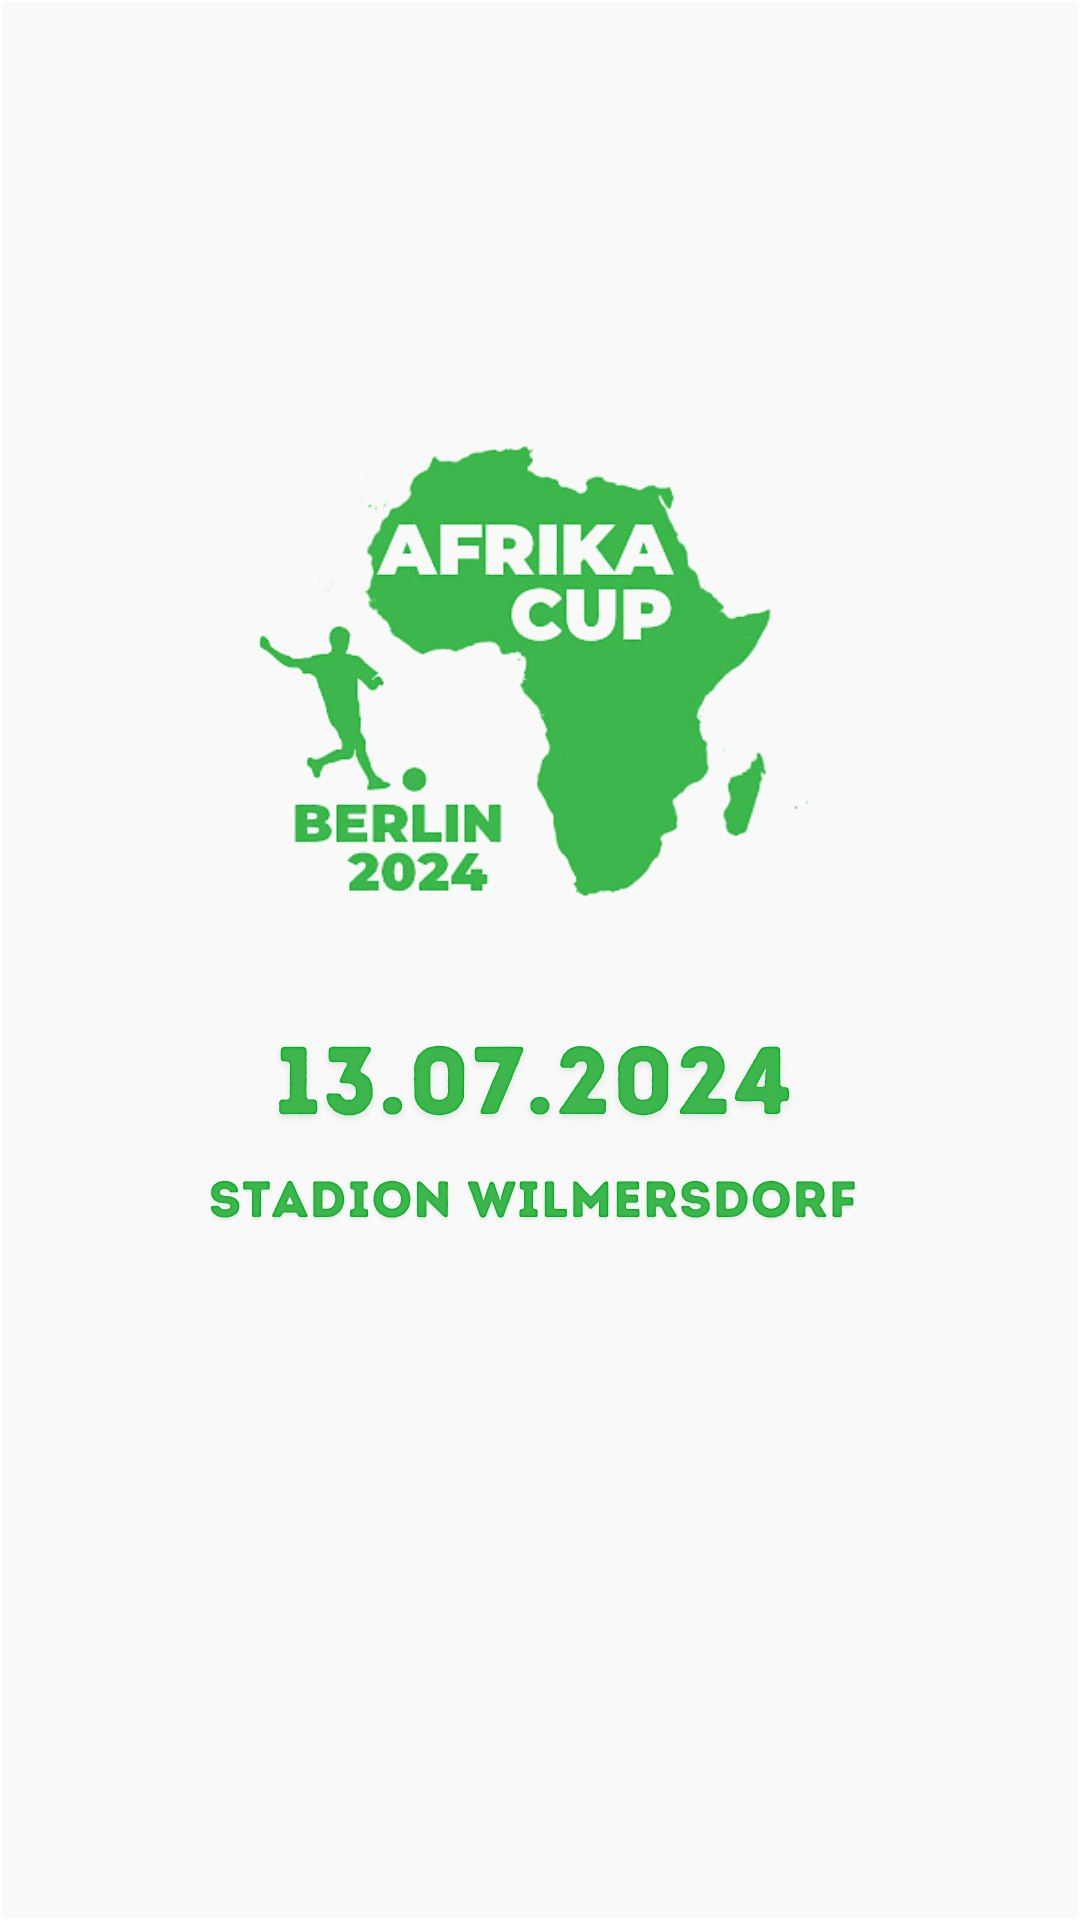 Afrikacupberlin 2024